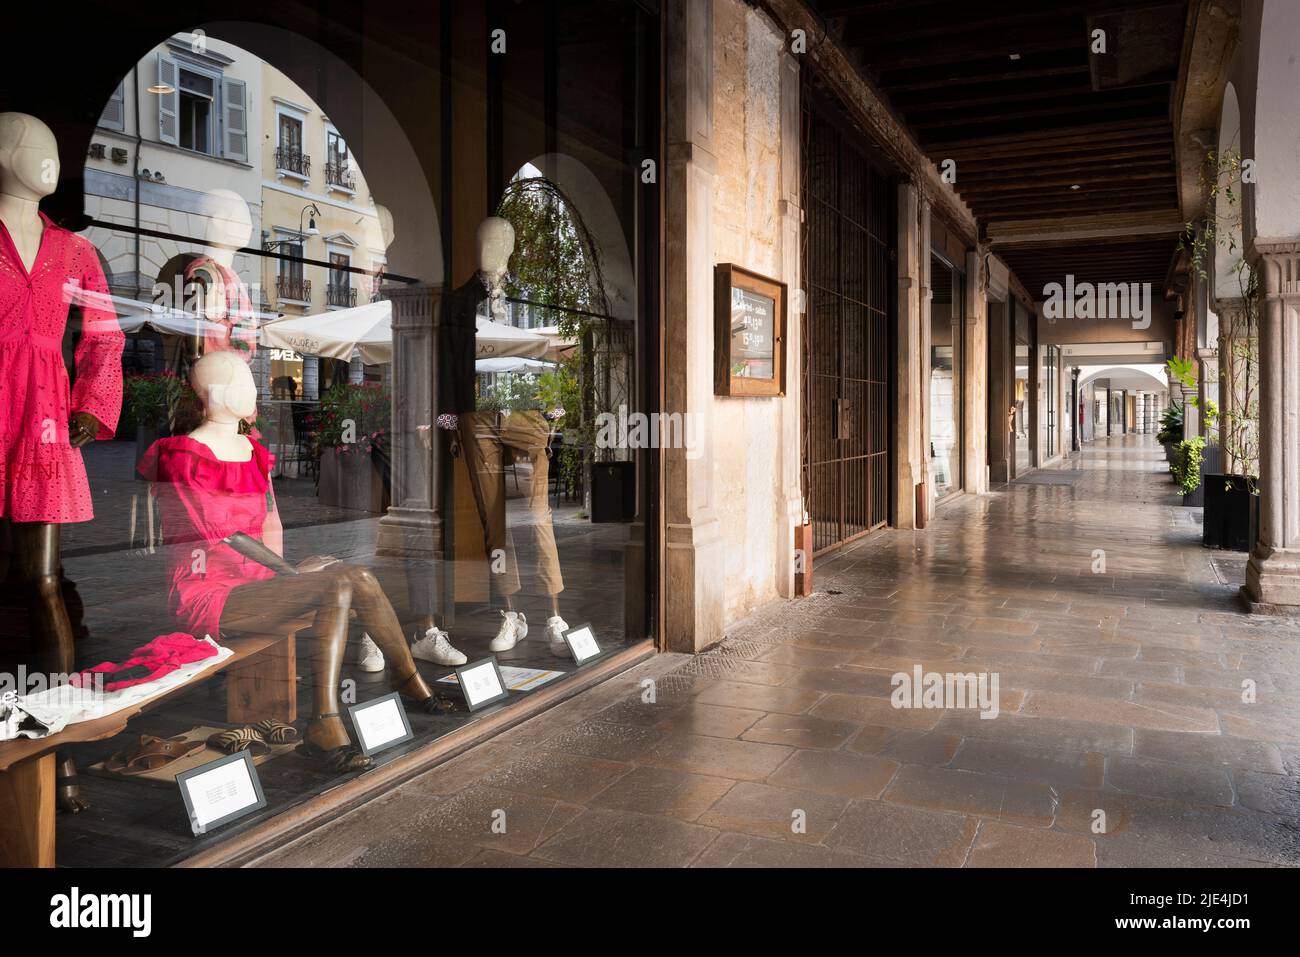 Vetrina di un negozio di moda sotto un portico. Tipica architettura e atmosfera classica italiana. Udine, Friuli Venezia Giulia, Italia. Foto Stock